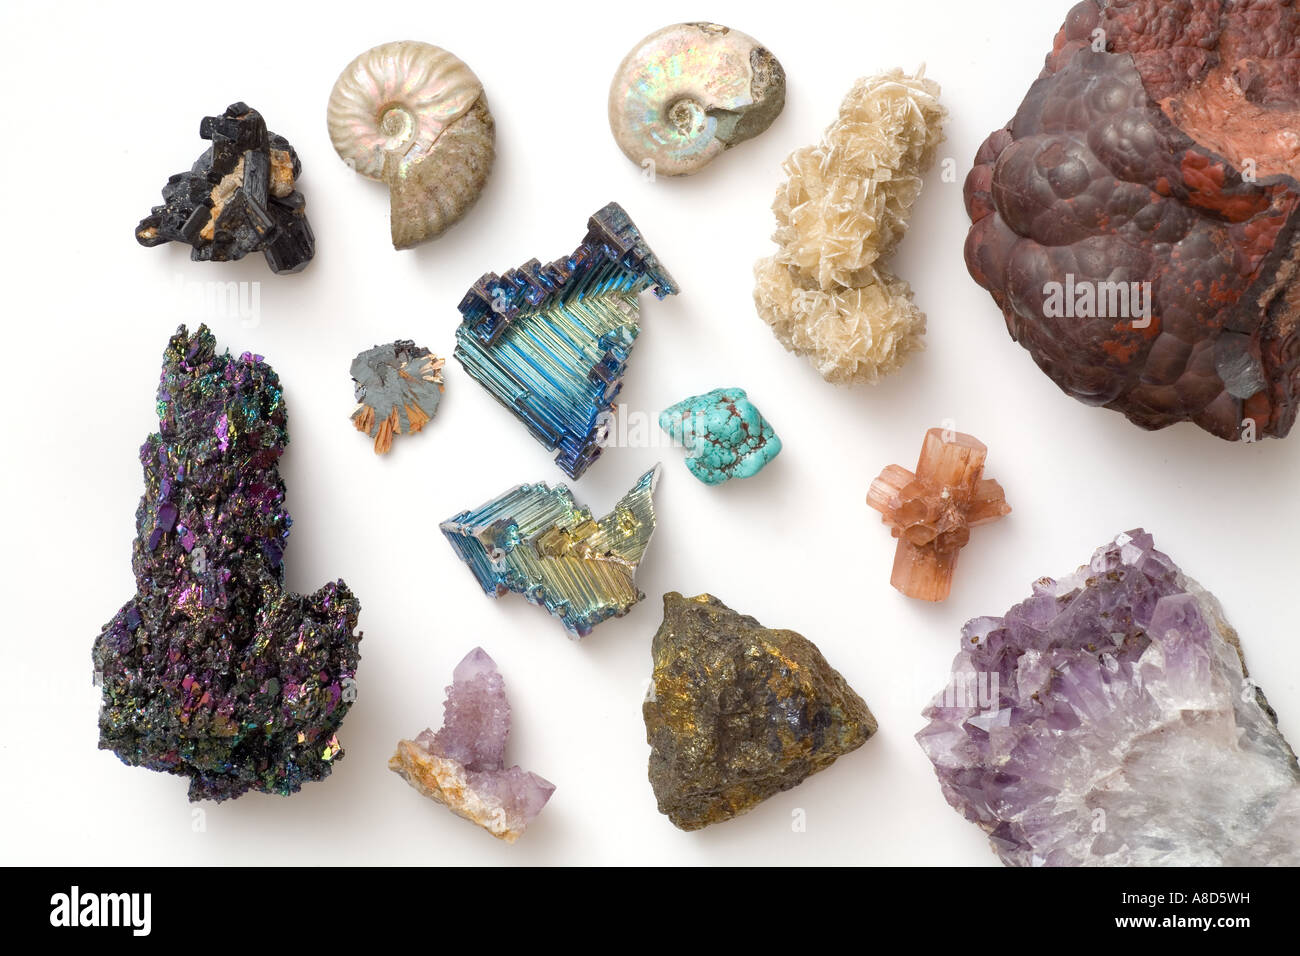 Bijoux pierres naturelles, Minéraux de collection, Fossiles MINERALYS